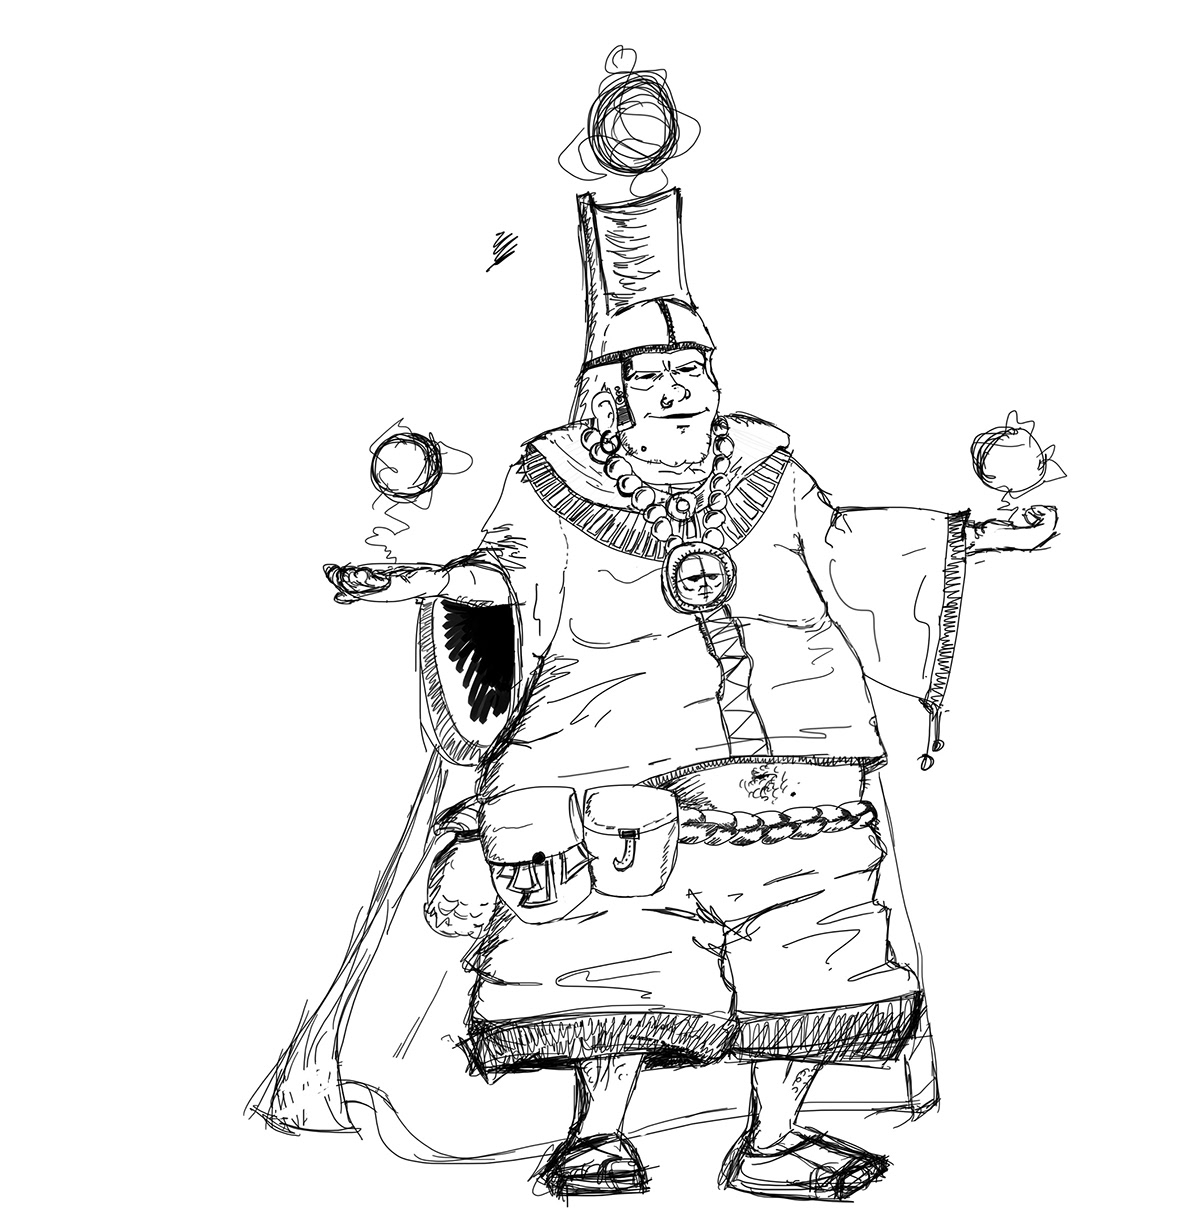 peope sketches woman merchant warrior butler